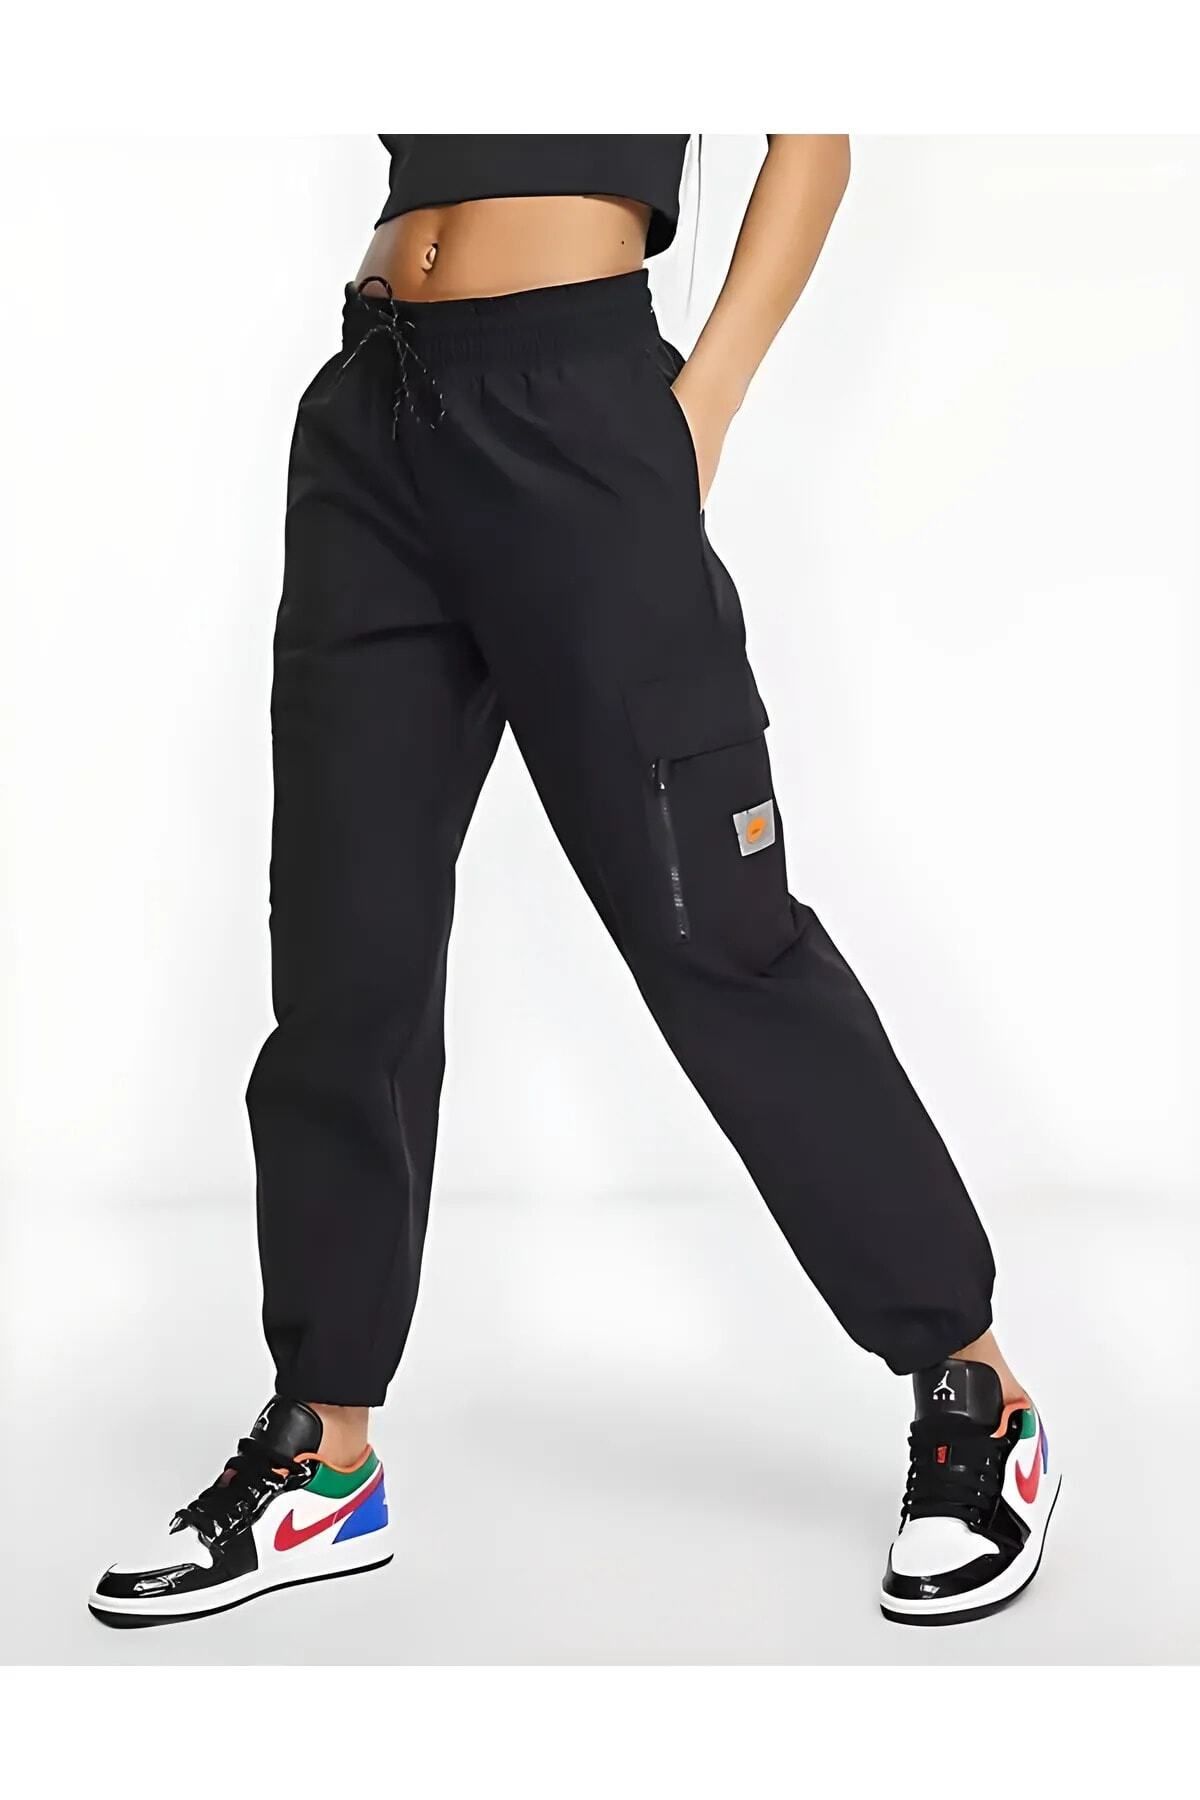 Nike Dri-fıt Get Fit Kadın Antrenman Eşofman Altı Fiyatı, Yorumları -  Trendyol